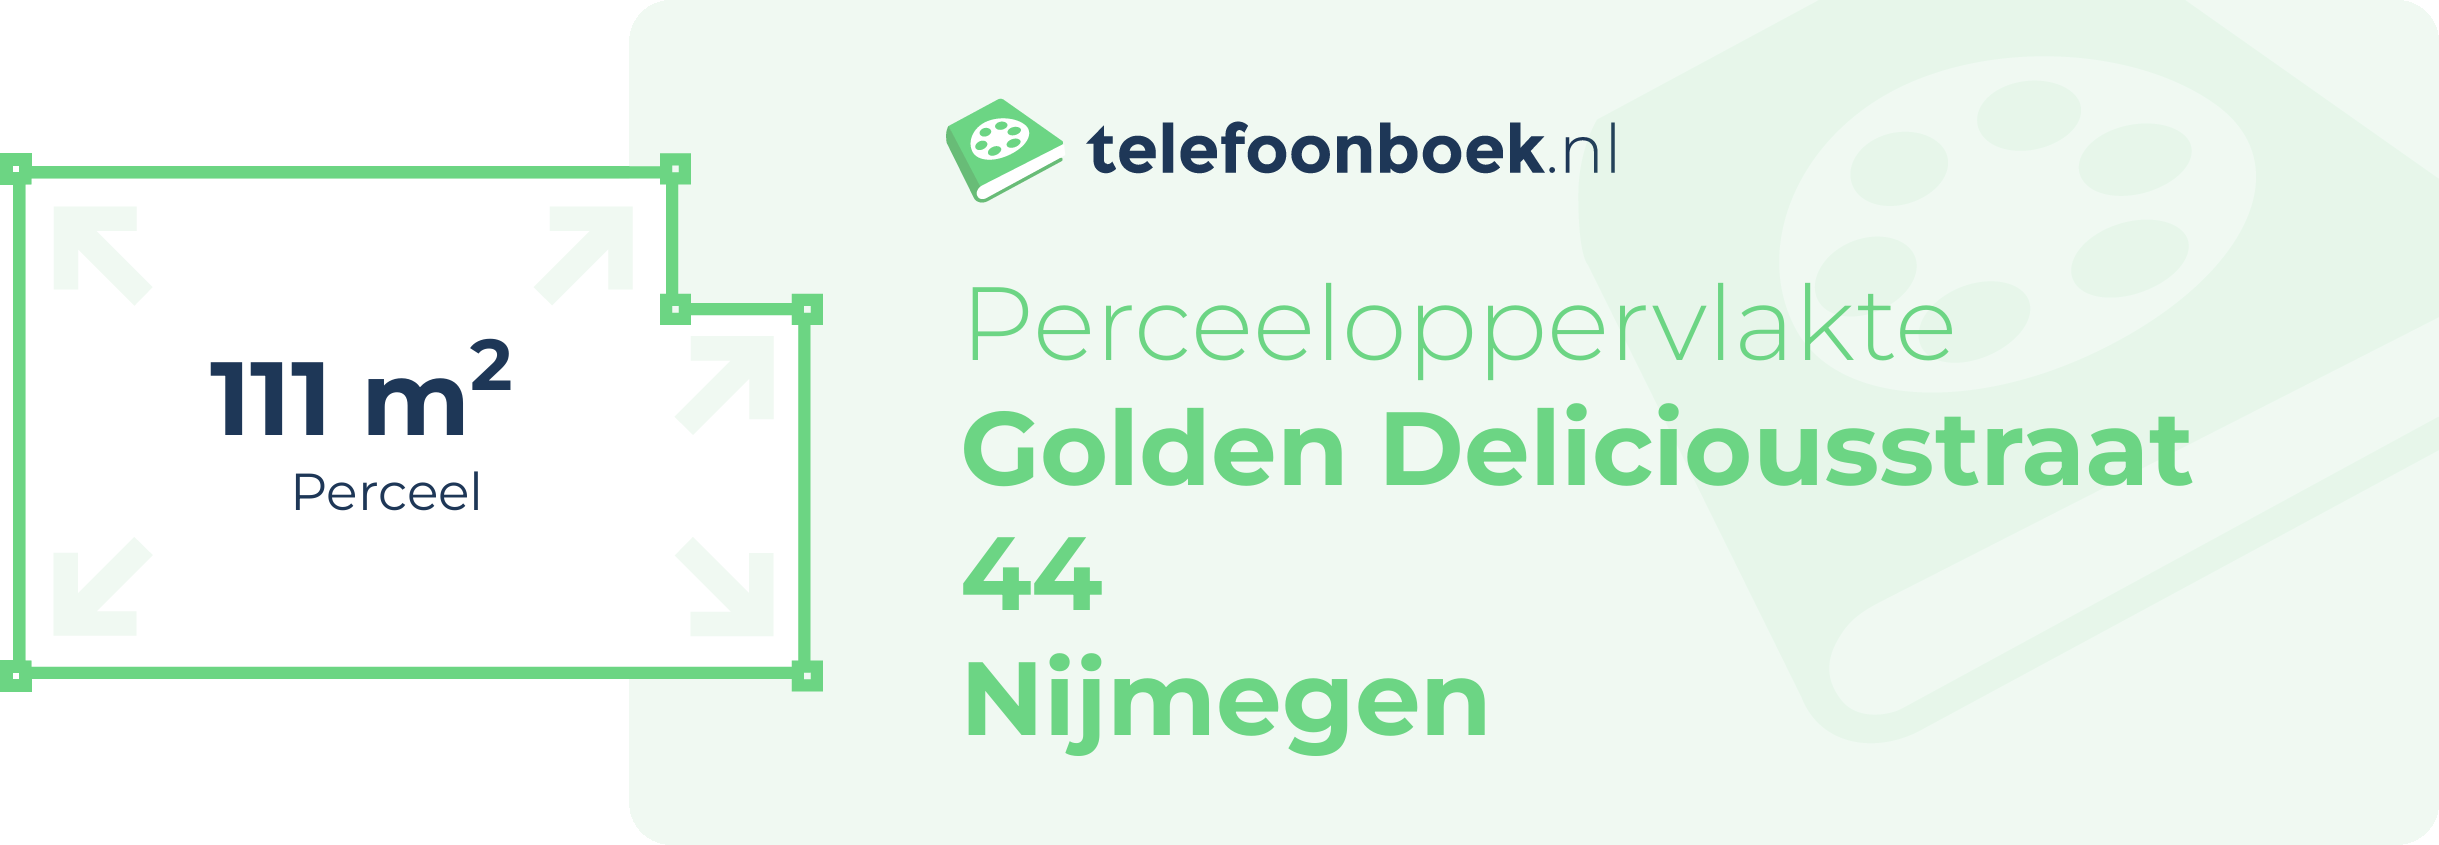 Perceeloppervlakte Golden Deliciousstraat 44 Nijmegen